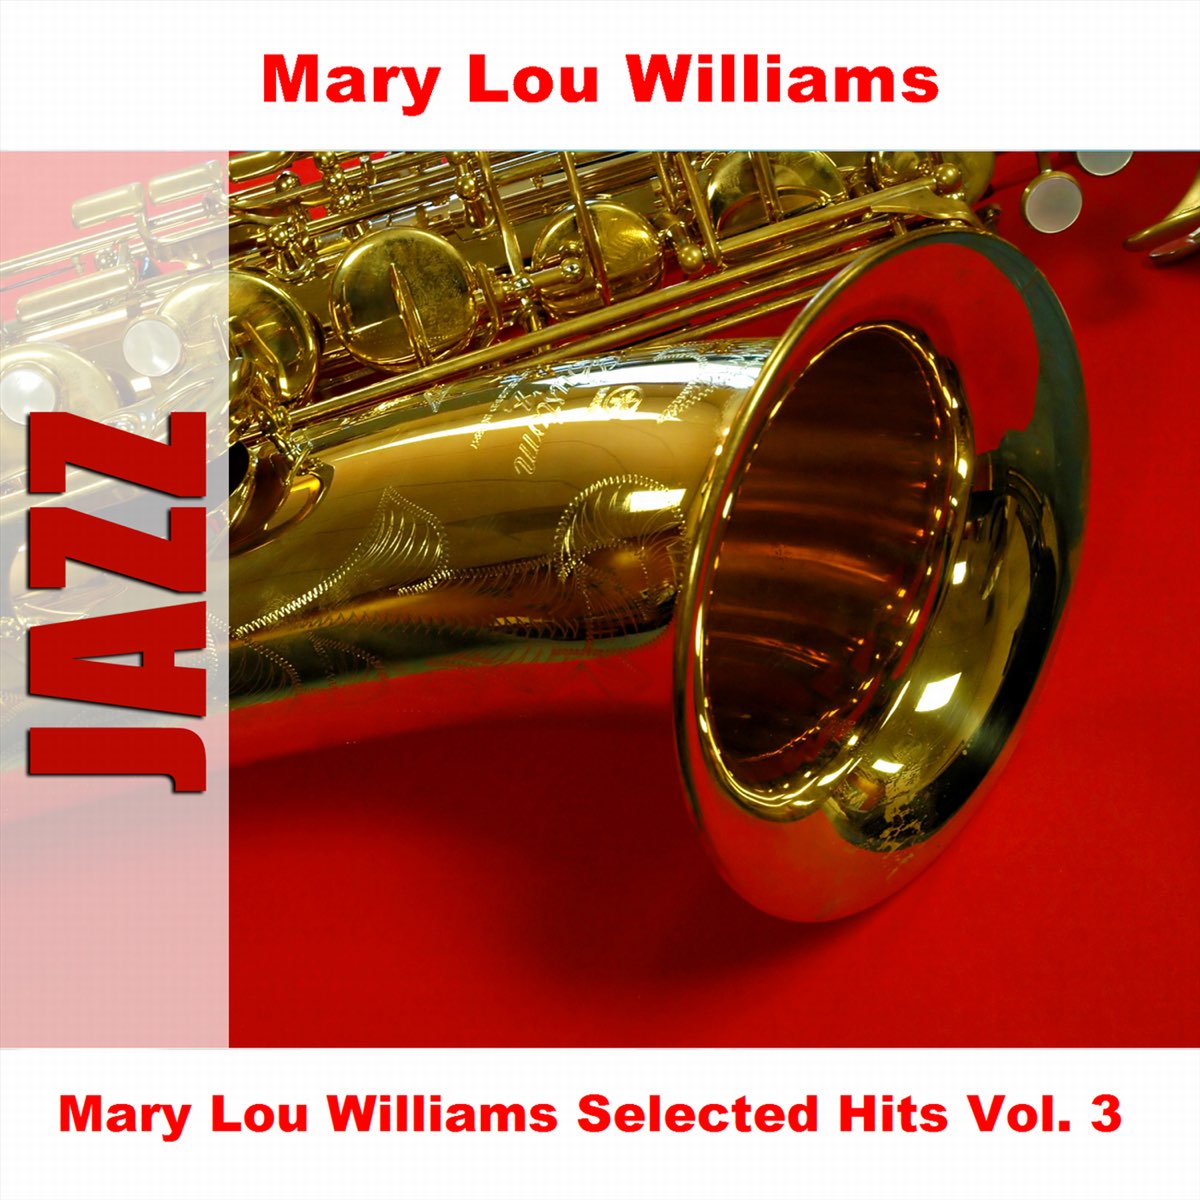 Mary Lou Williams Selected Hits Vol. 3 izvođača Mary Lou Williams na usluzi  Apple Music